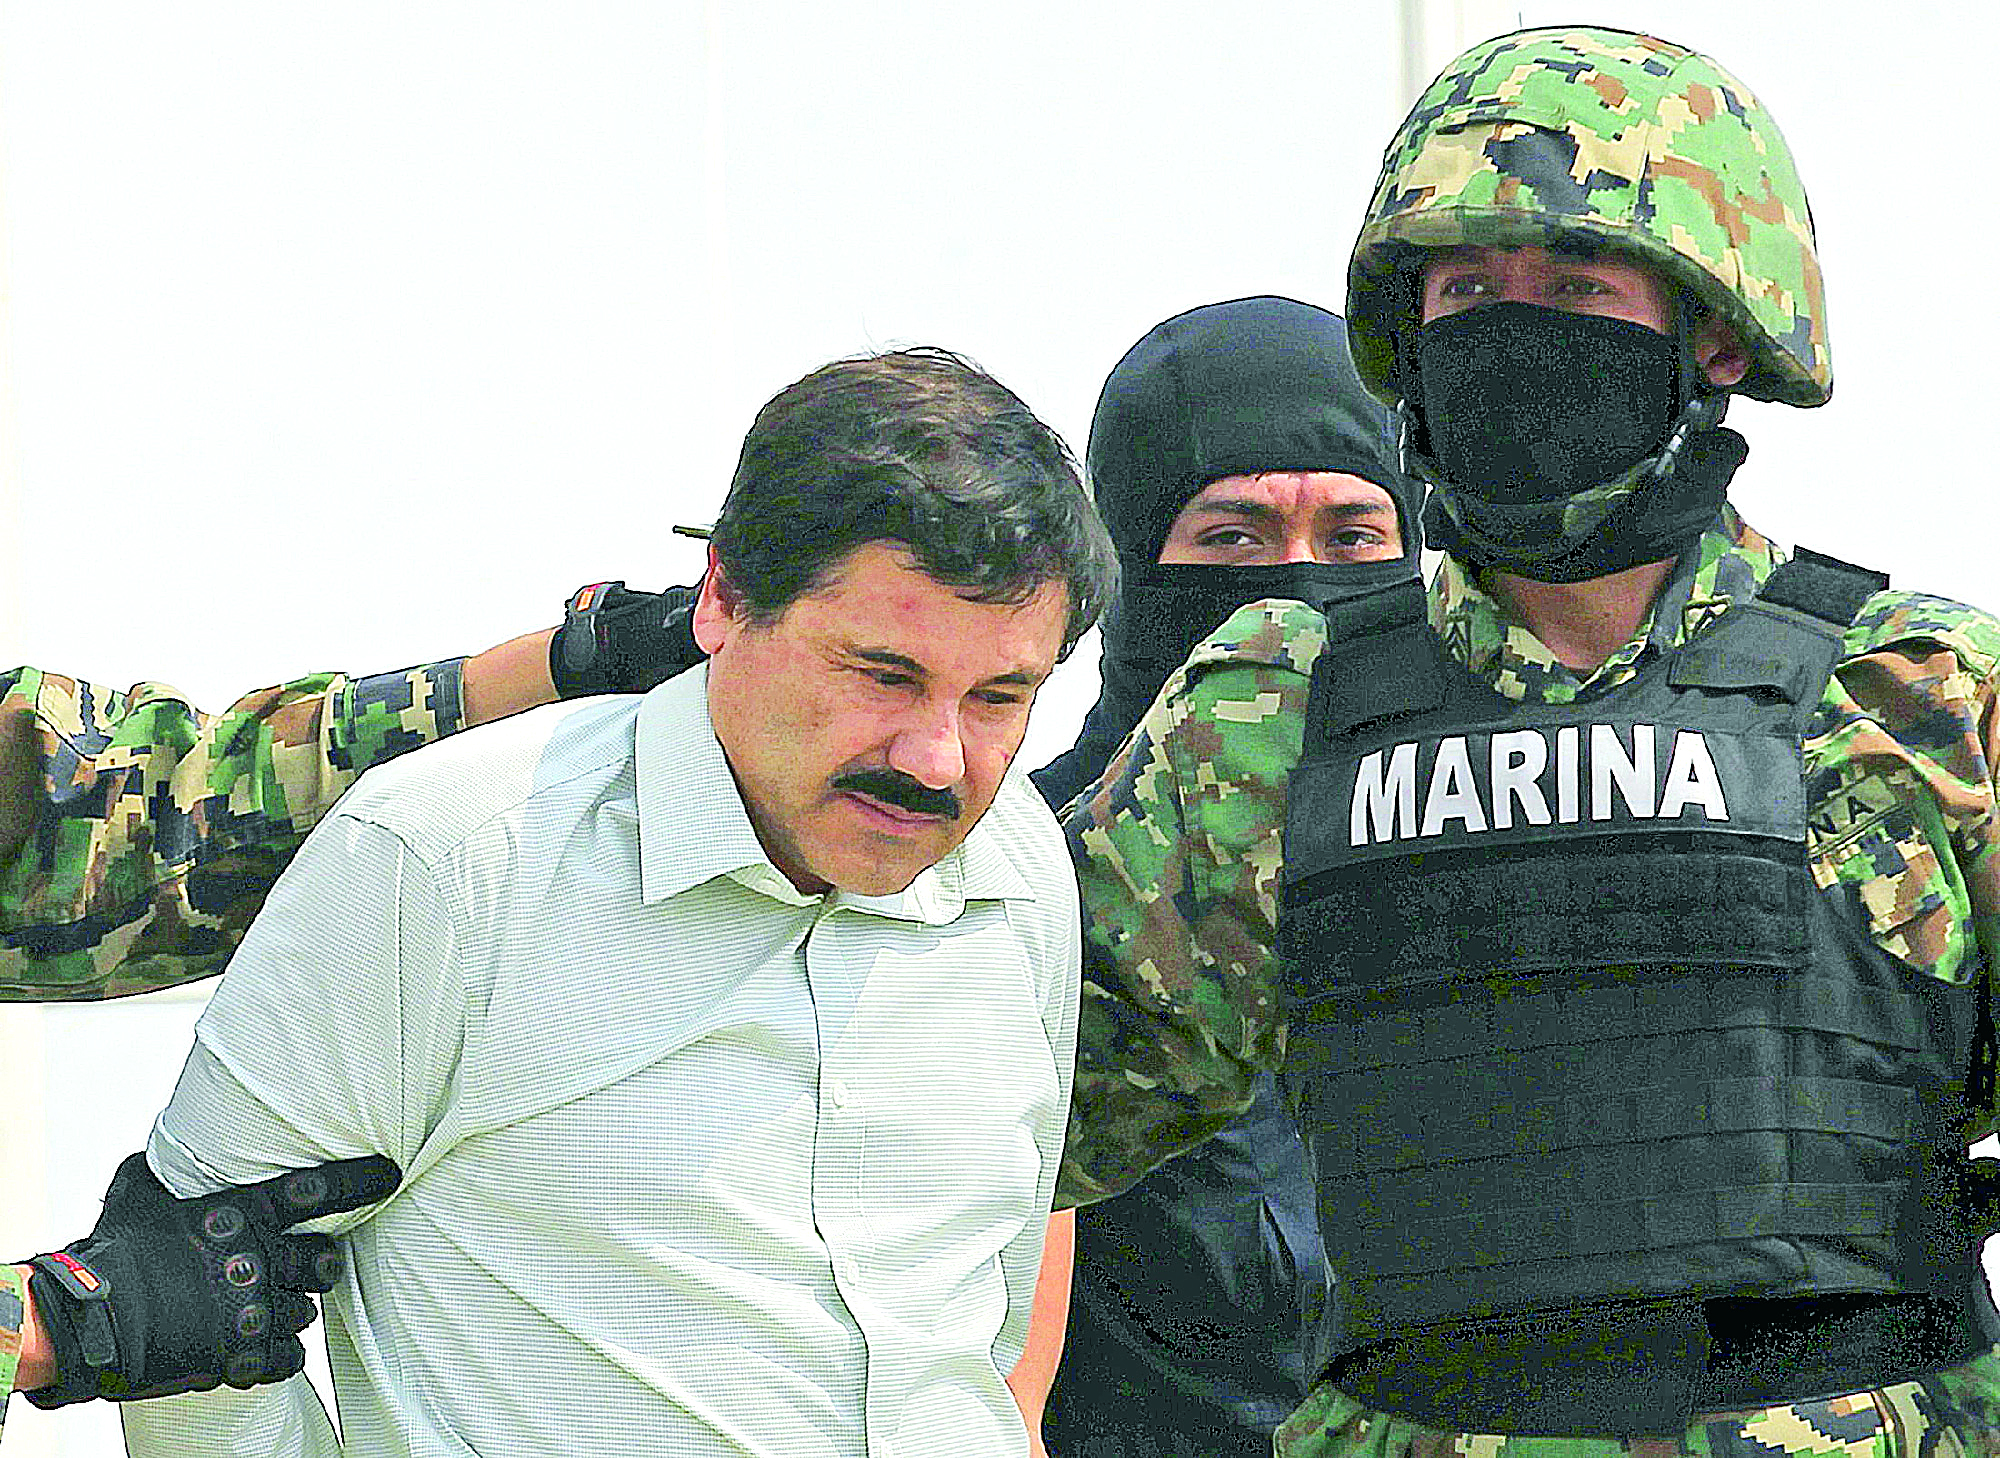 La fuga de 'El Chapo' evidenció crisis: PAN